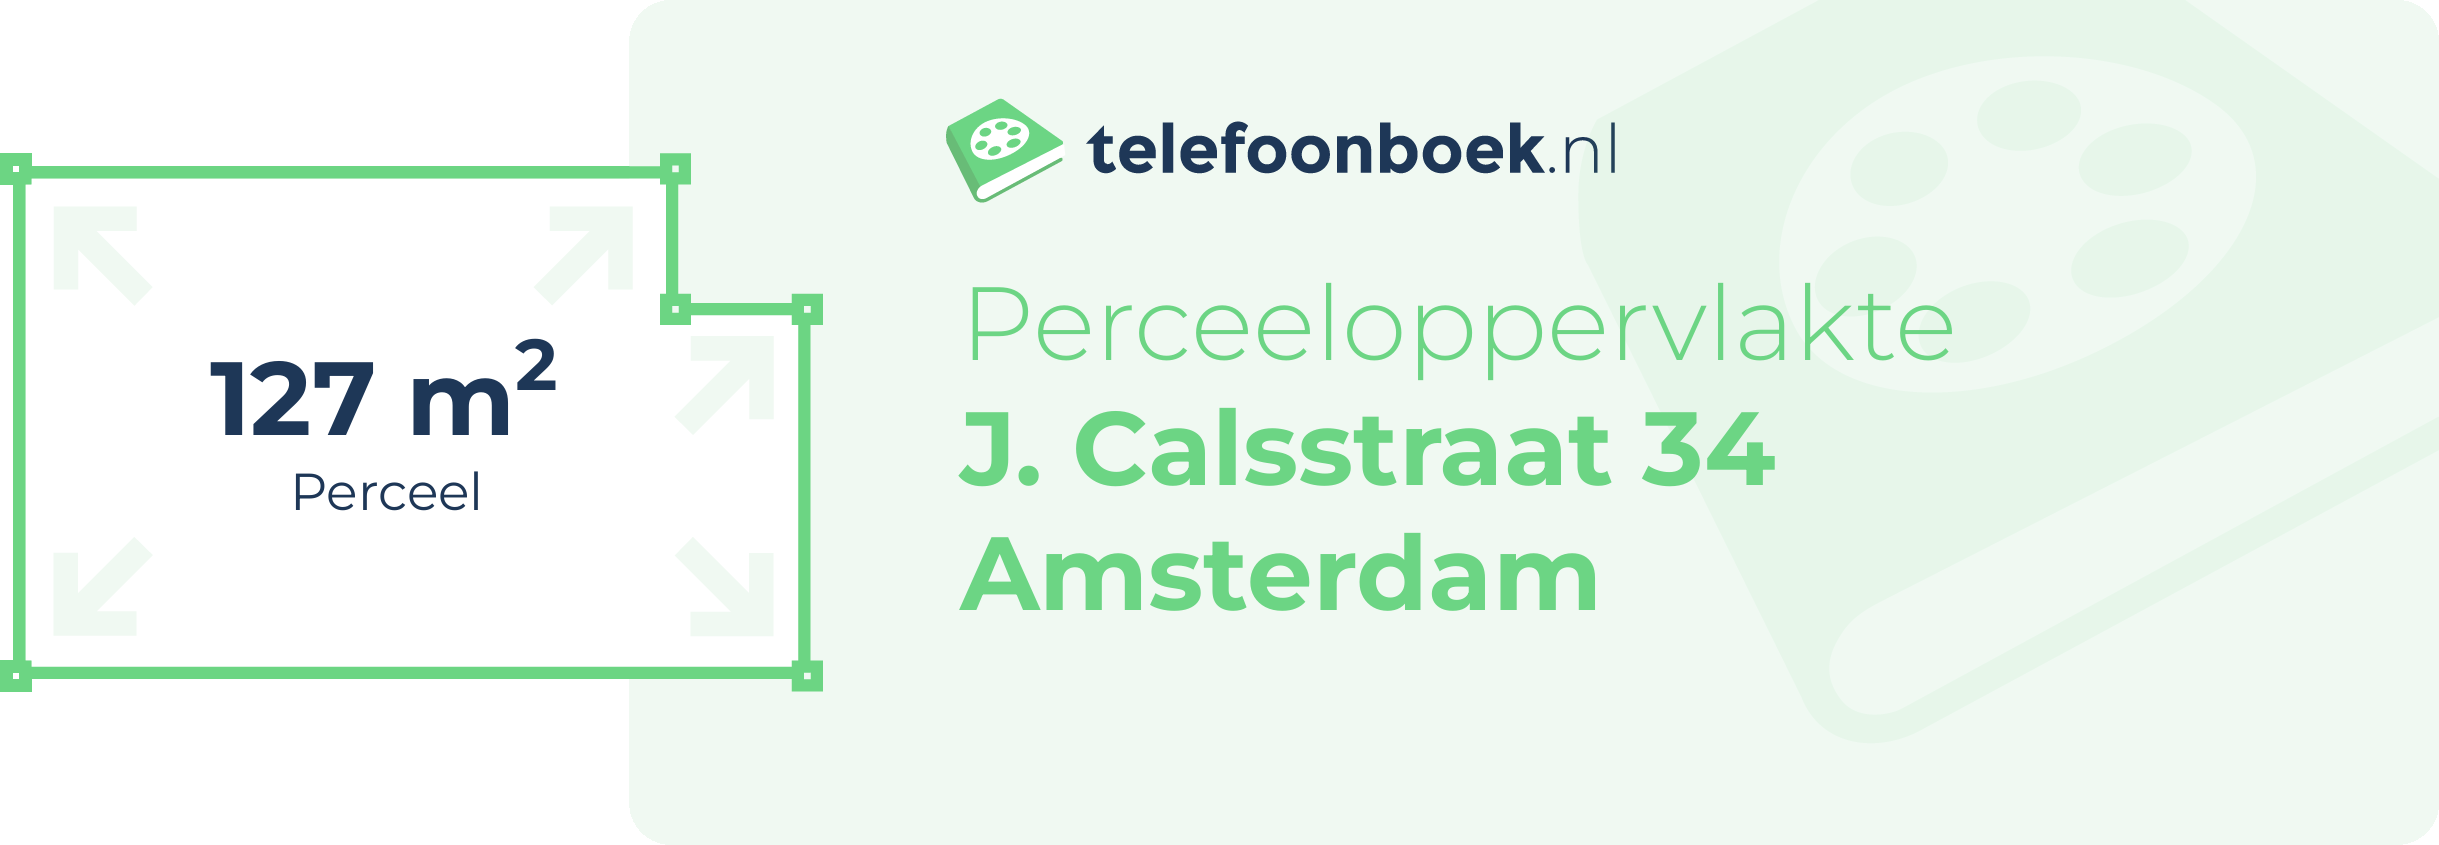 Perceeloppervlakte J. Calsstraat 34 Amsterdam